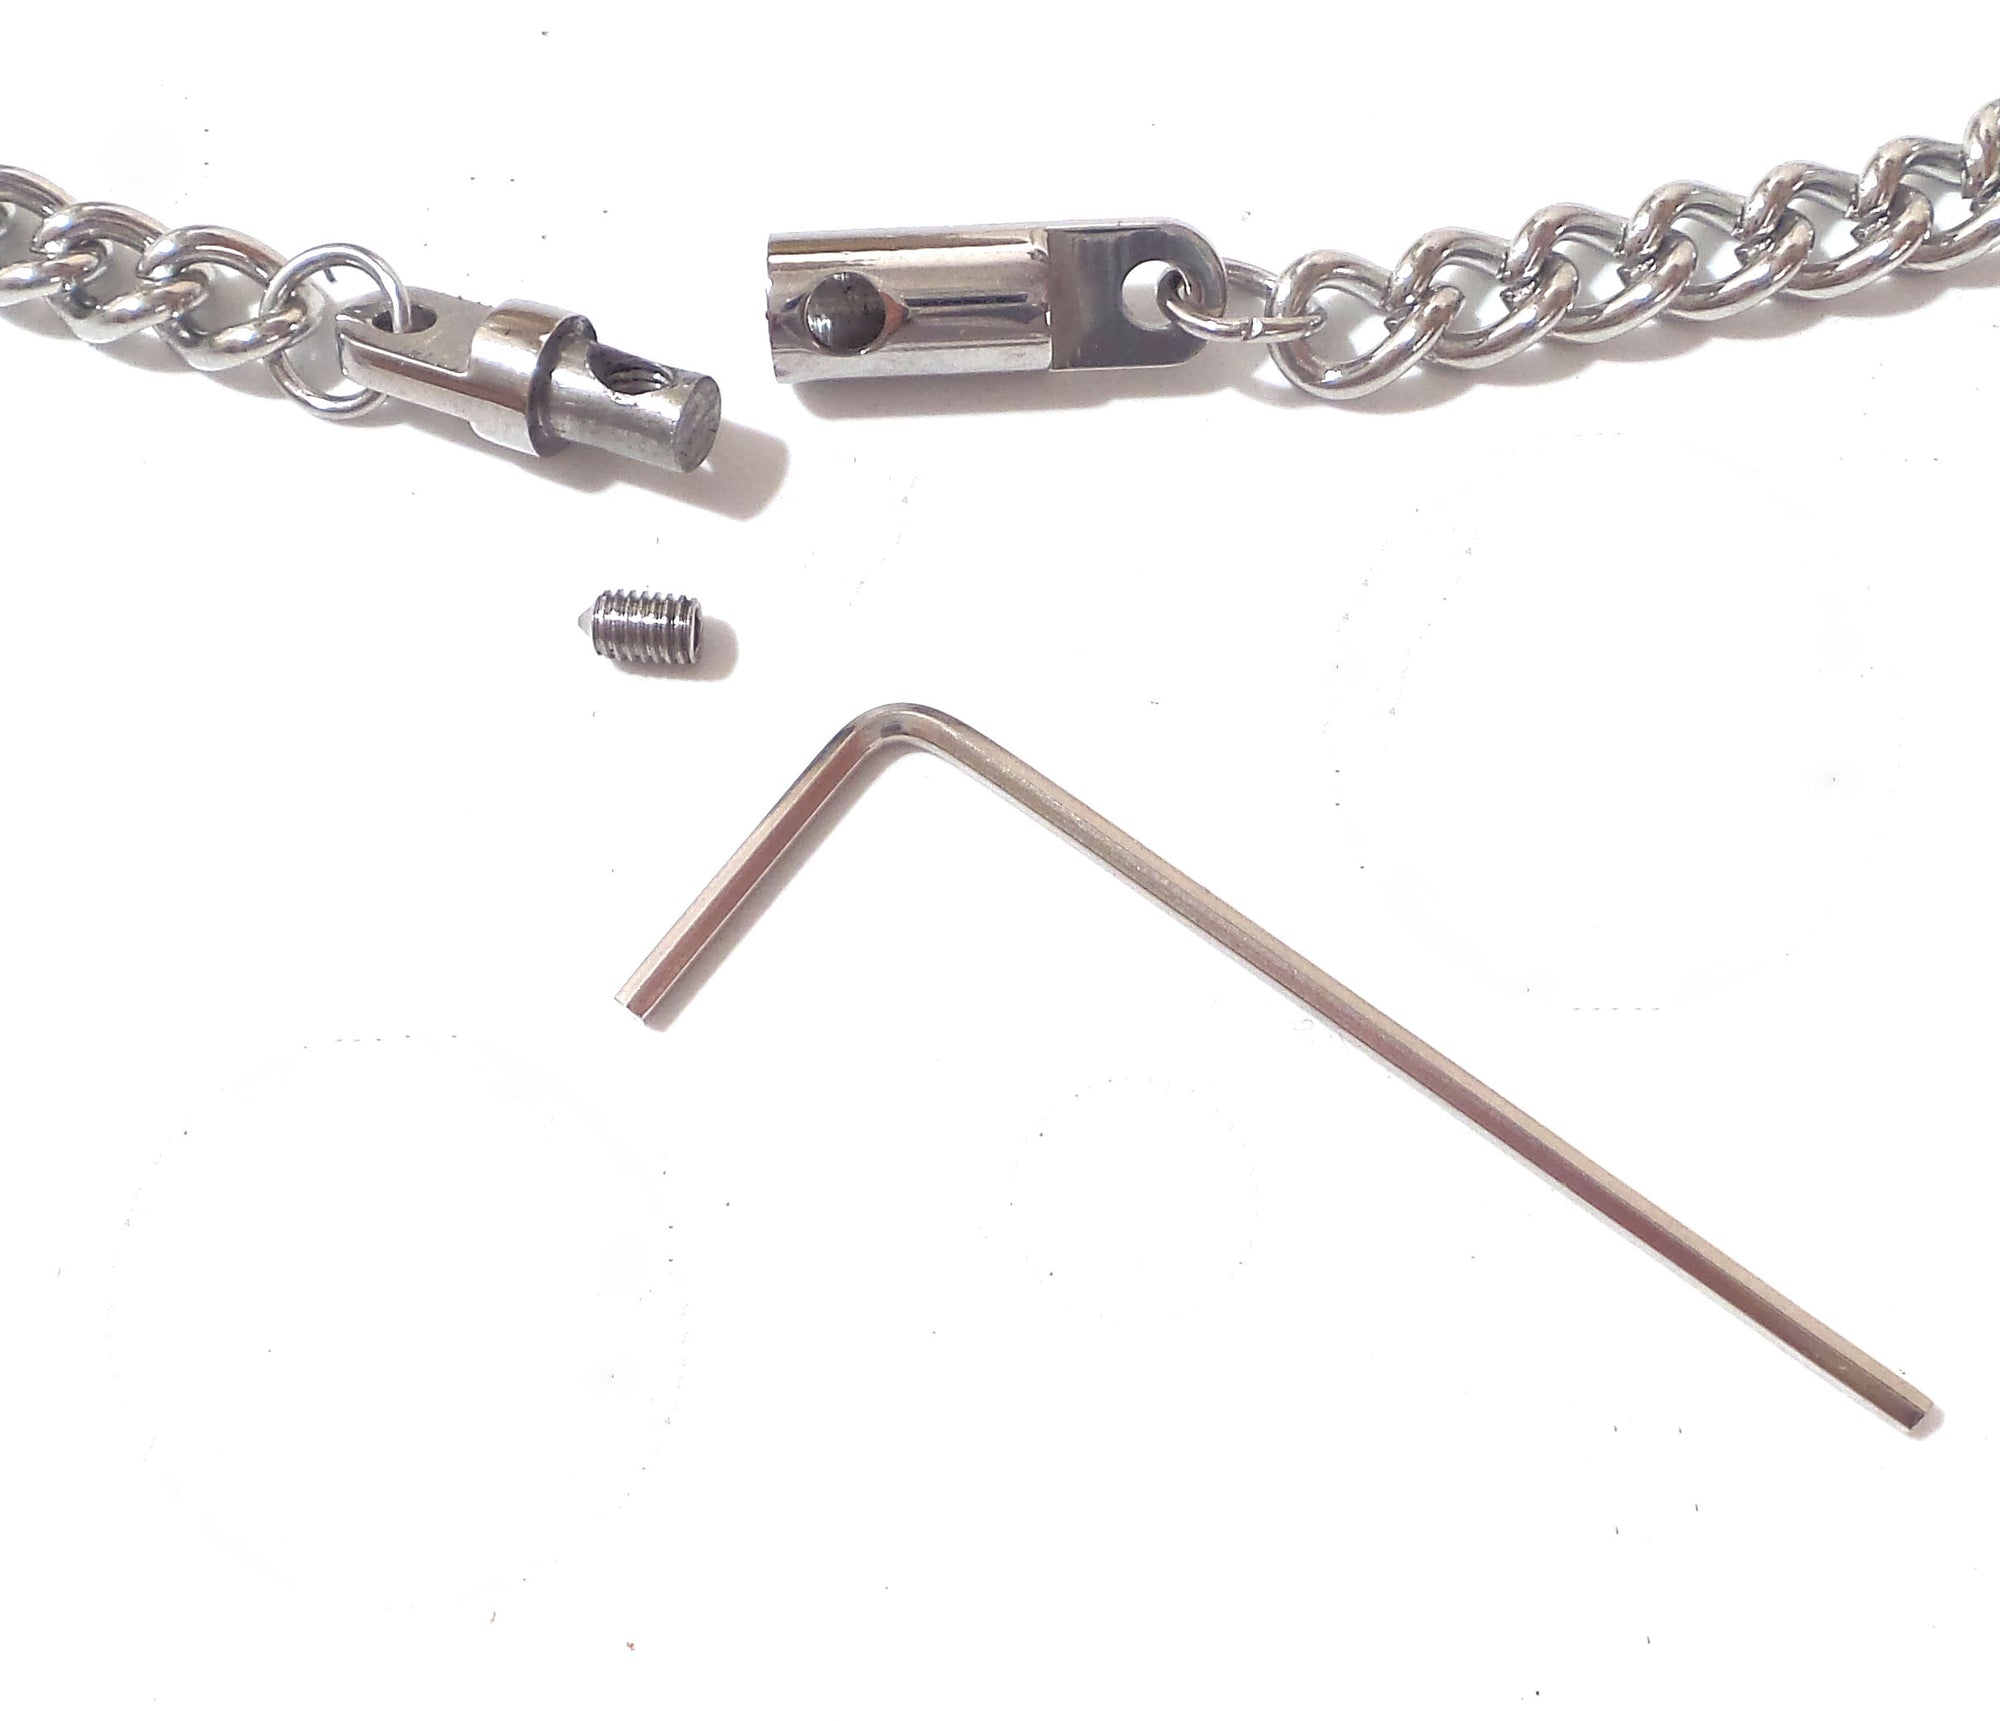 Locking Bondage Chain Necklace with Key Multiple Sizes